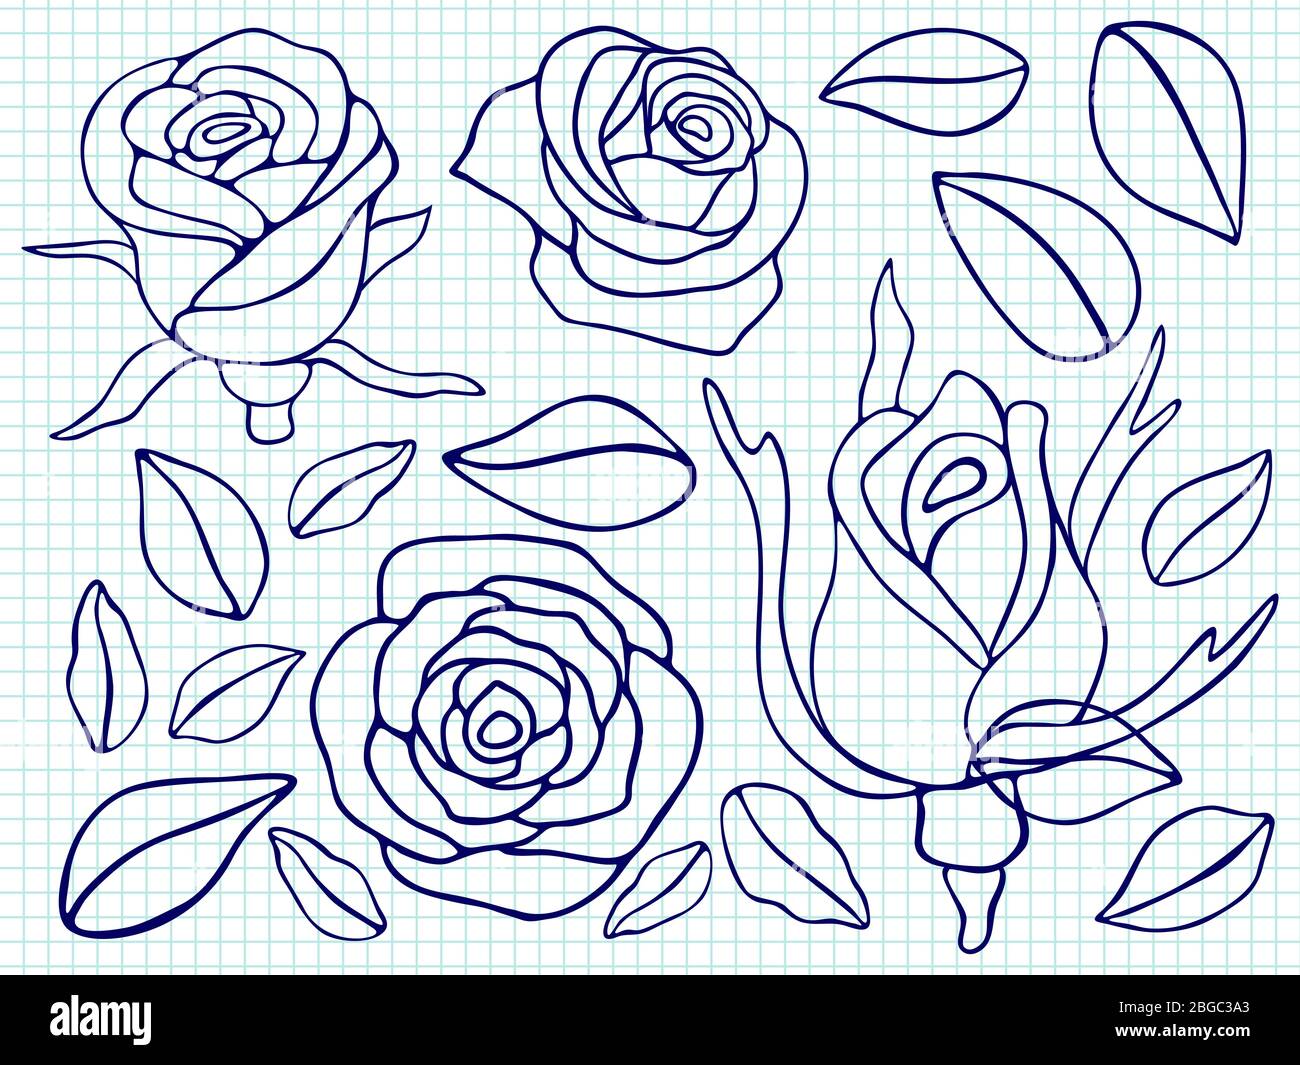 Stylo bille dessin roses et feuilles sur la page du bloc-notes. Illustration vectorielle Illustration de Vecteur